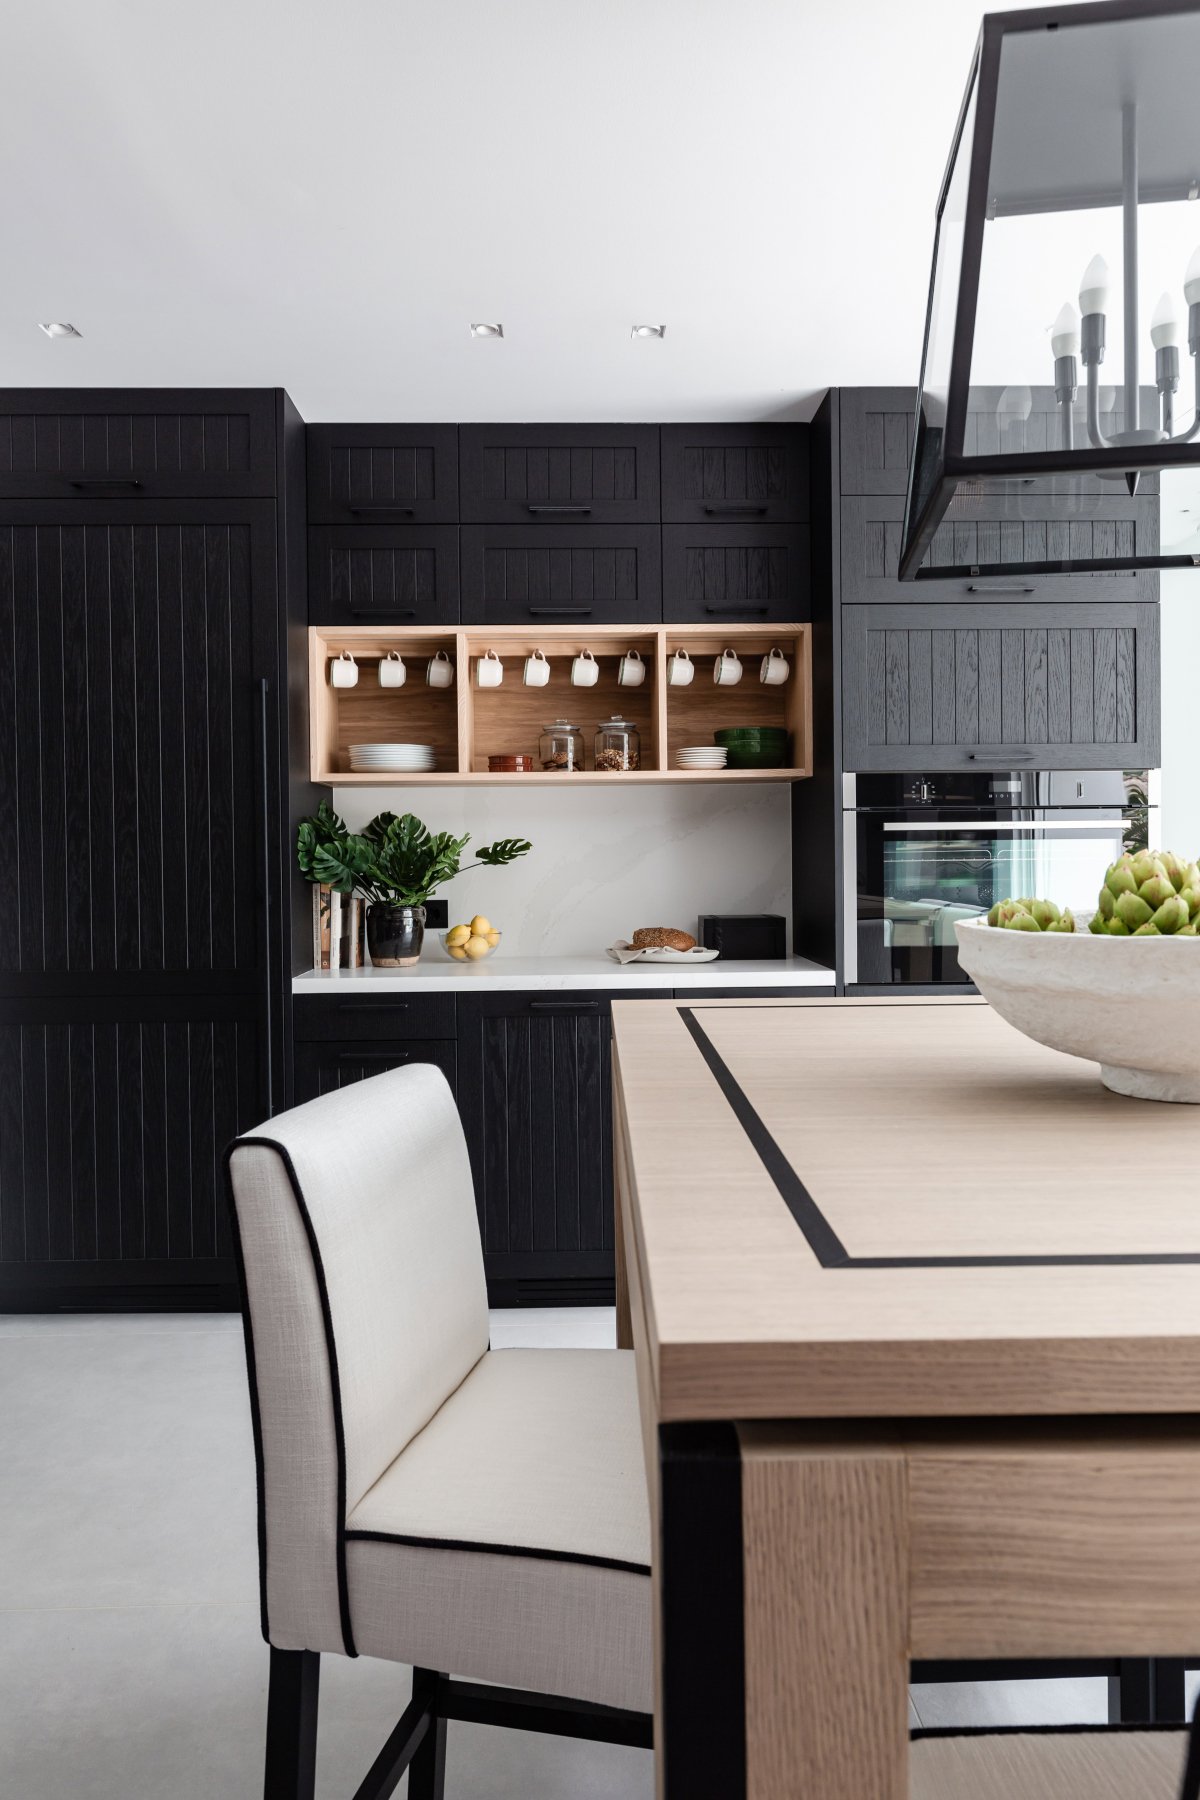 Cocina rústica con muebles de madera pintados en negro